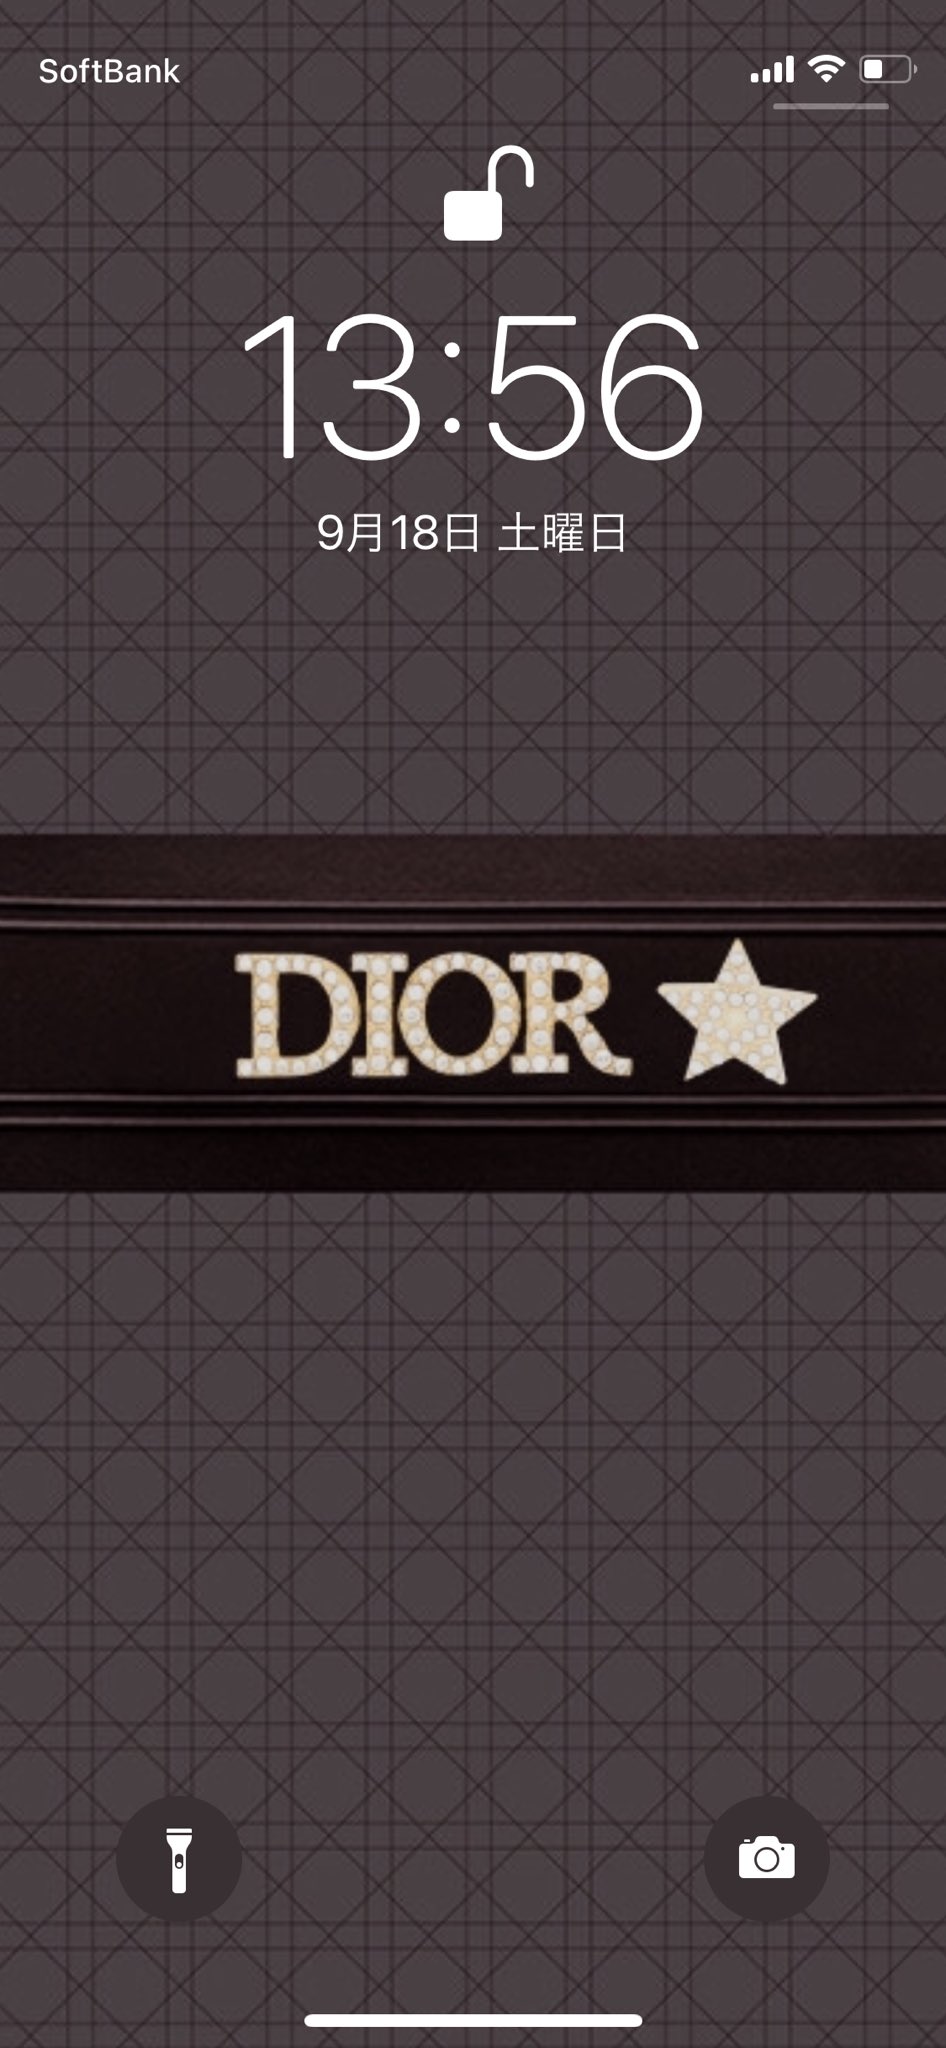 𝚖𝚎𝚛𝚞 Diorの公式lineから作れる待ち受け可愛い 好きな文字も入れれるから名前とかも入れれる T Co Grhtrgkbgz Twitter